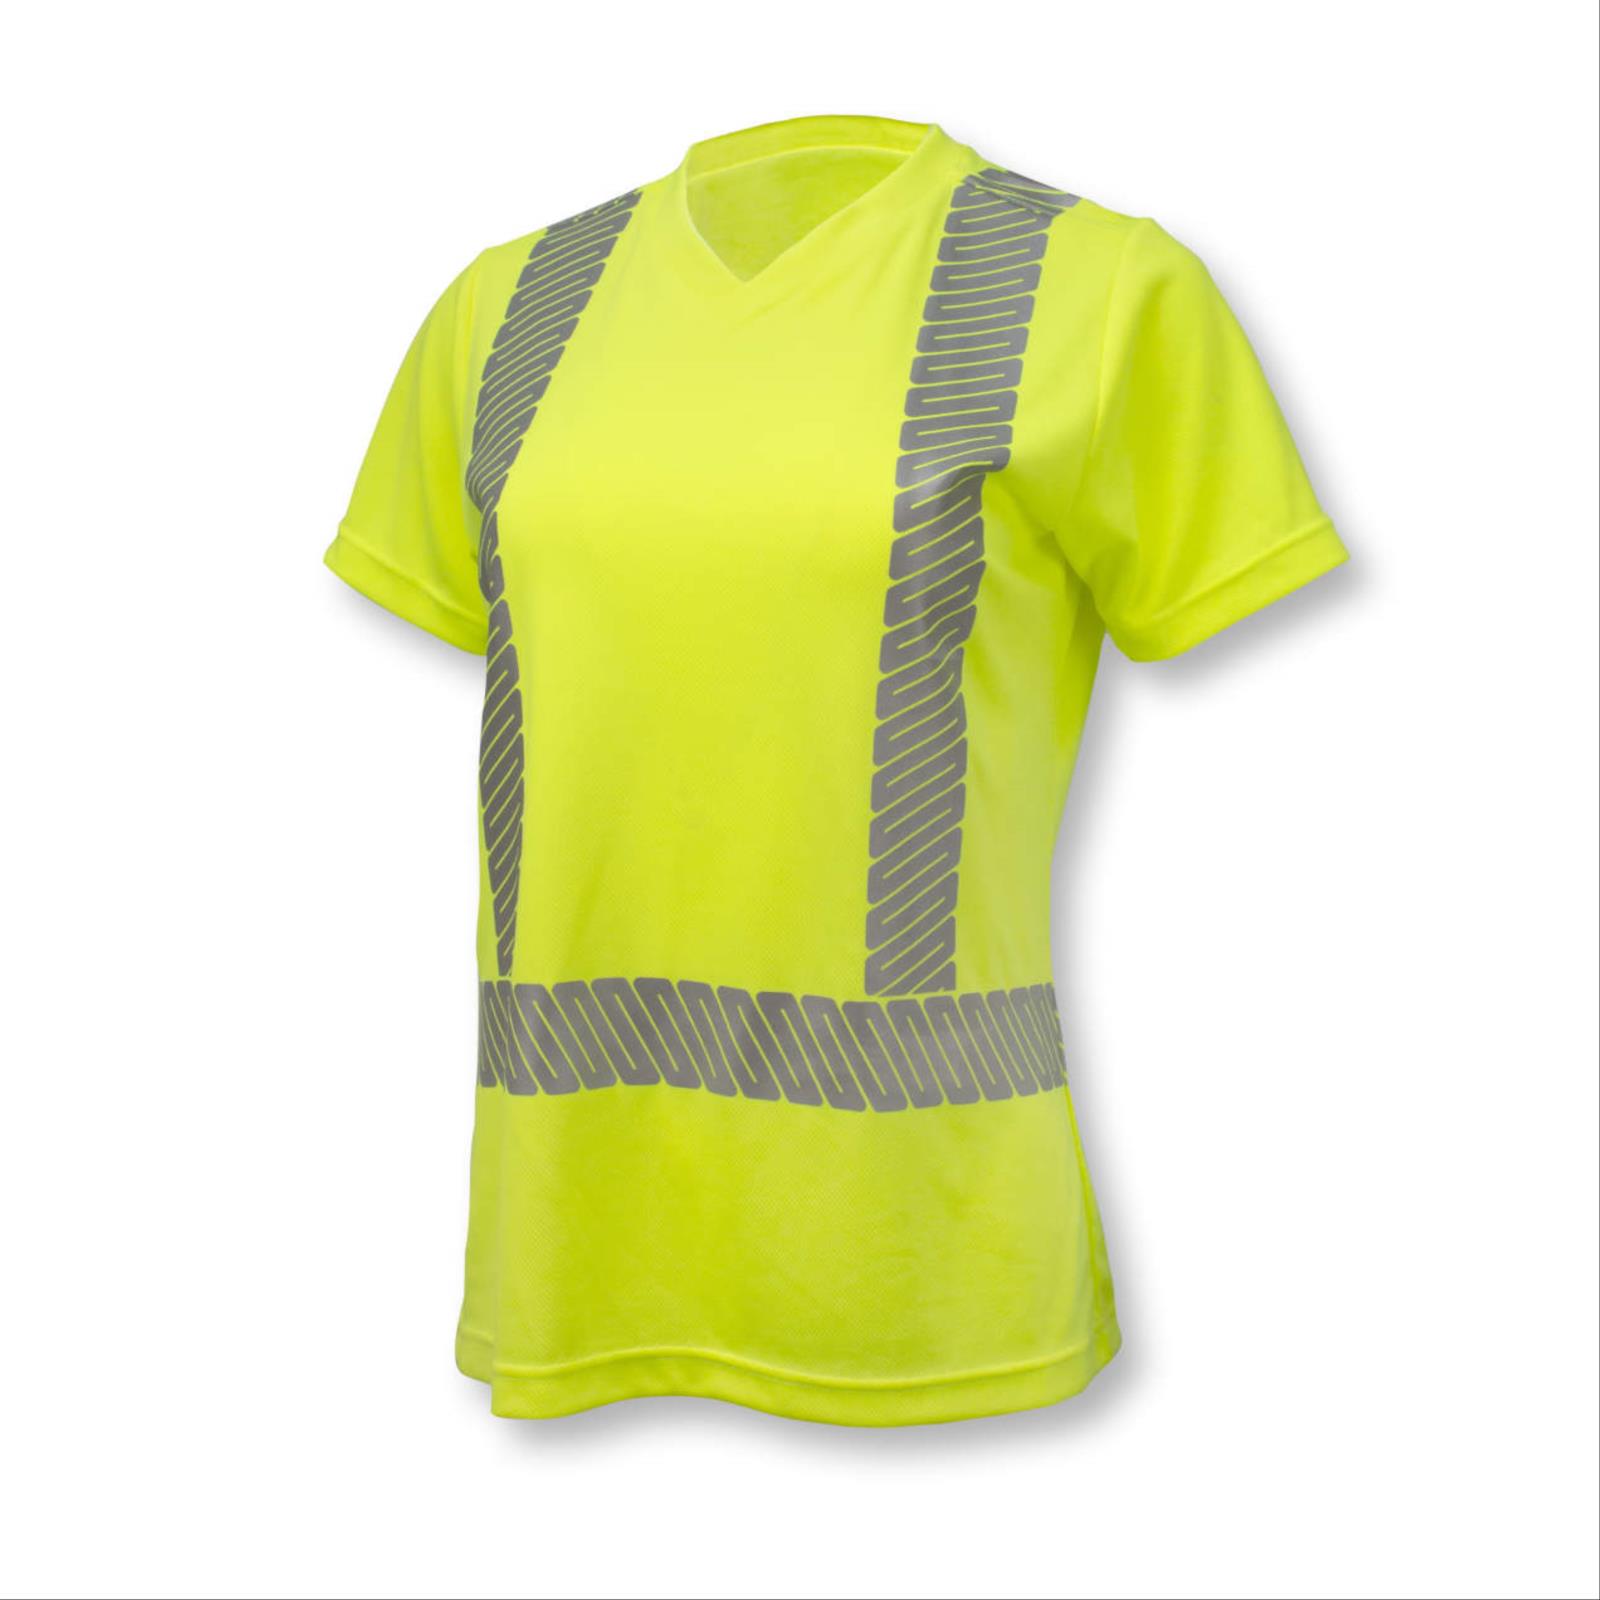 Womens High-Vis Safety T-Shirt, Type R Class 2